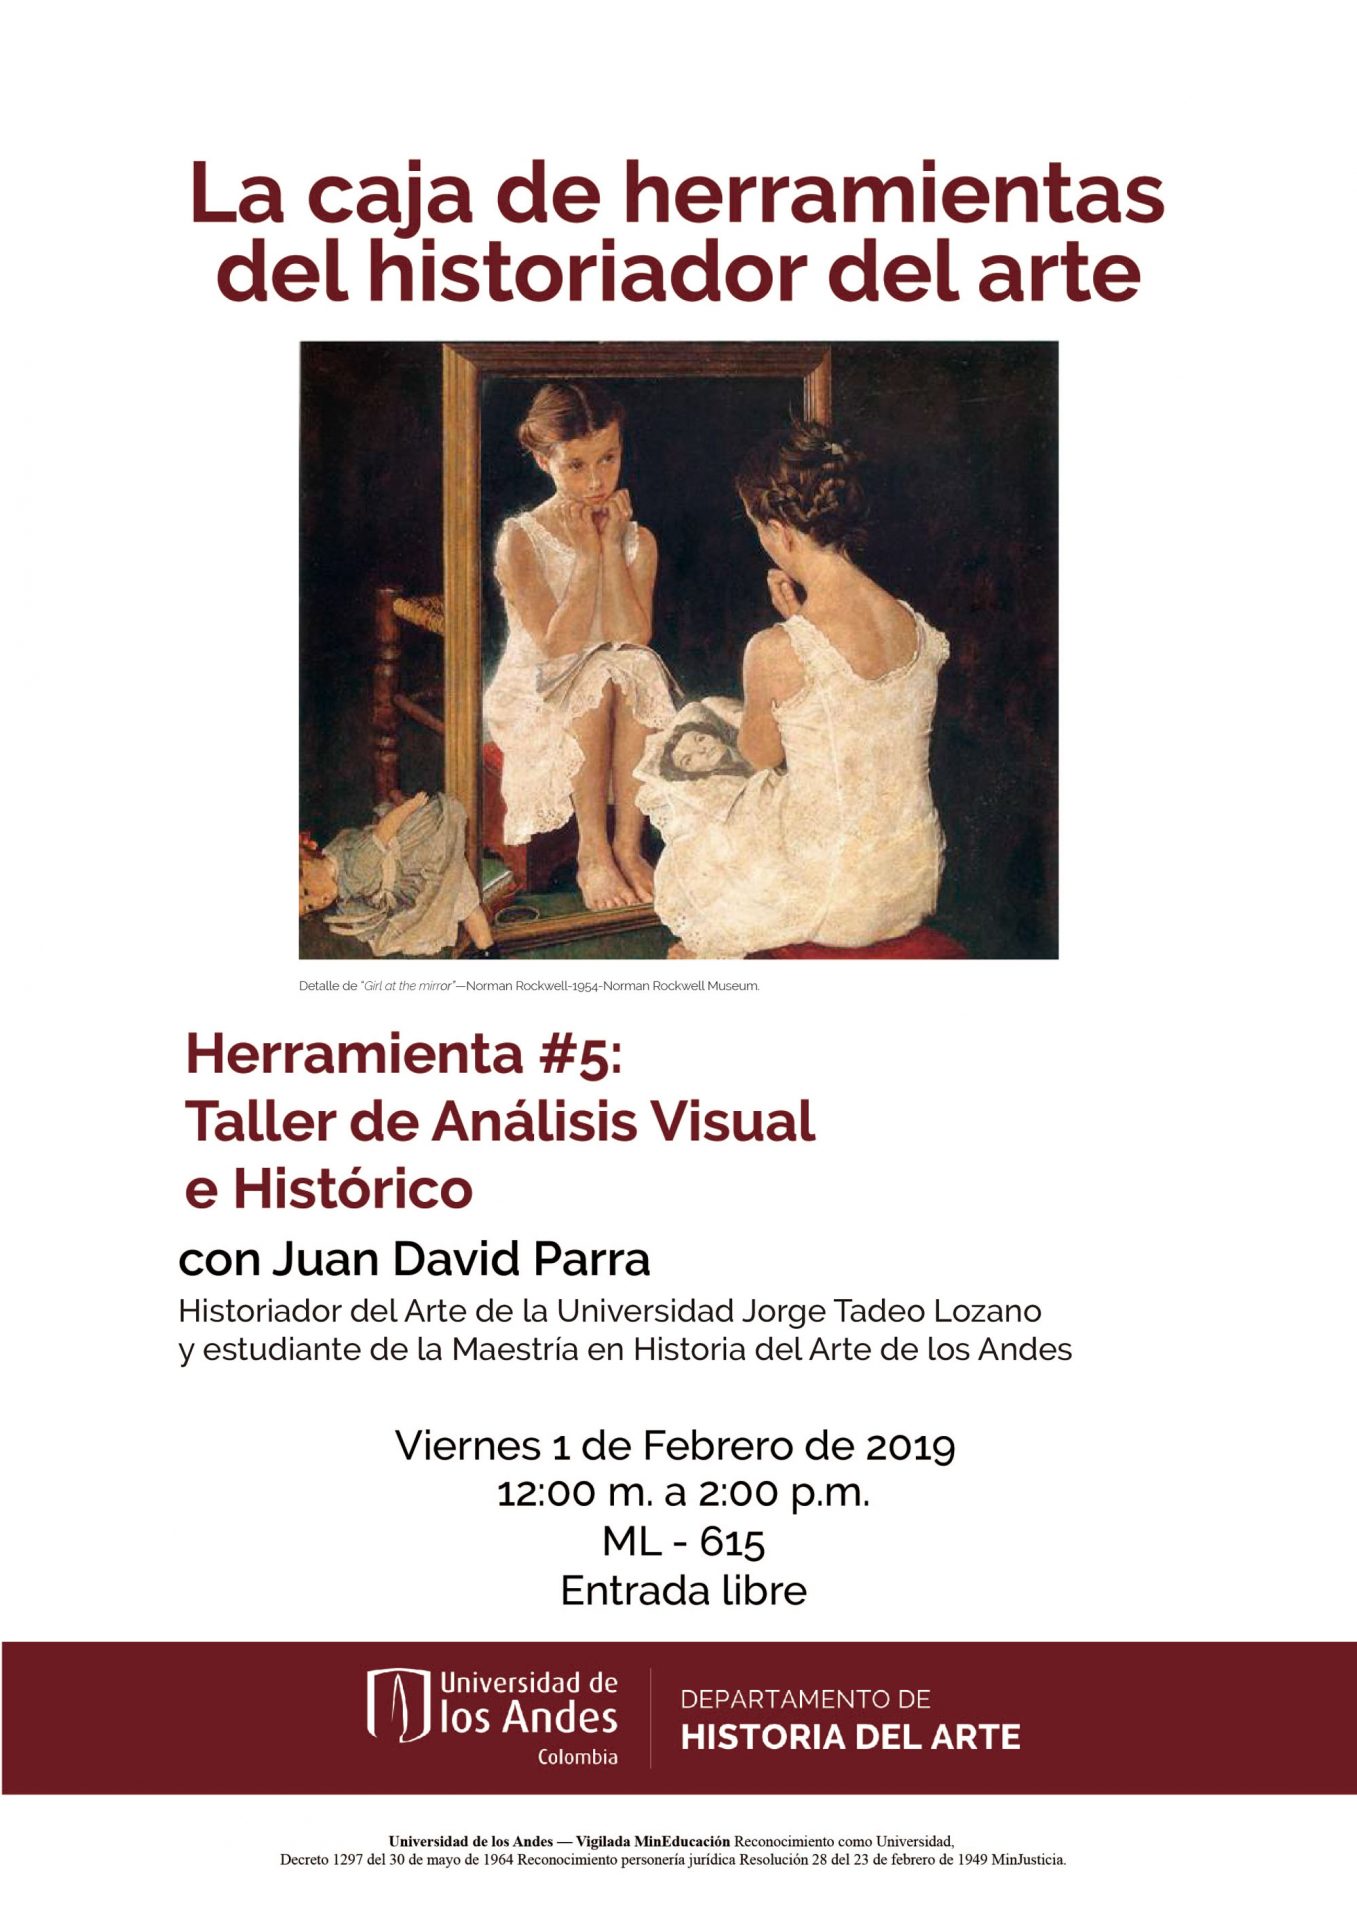 Asista al taller sobre la herramienta #5 de La caja de herramientas del historiador del arte con Juan David Parra.